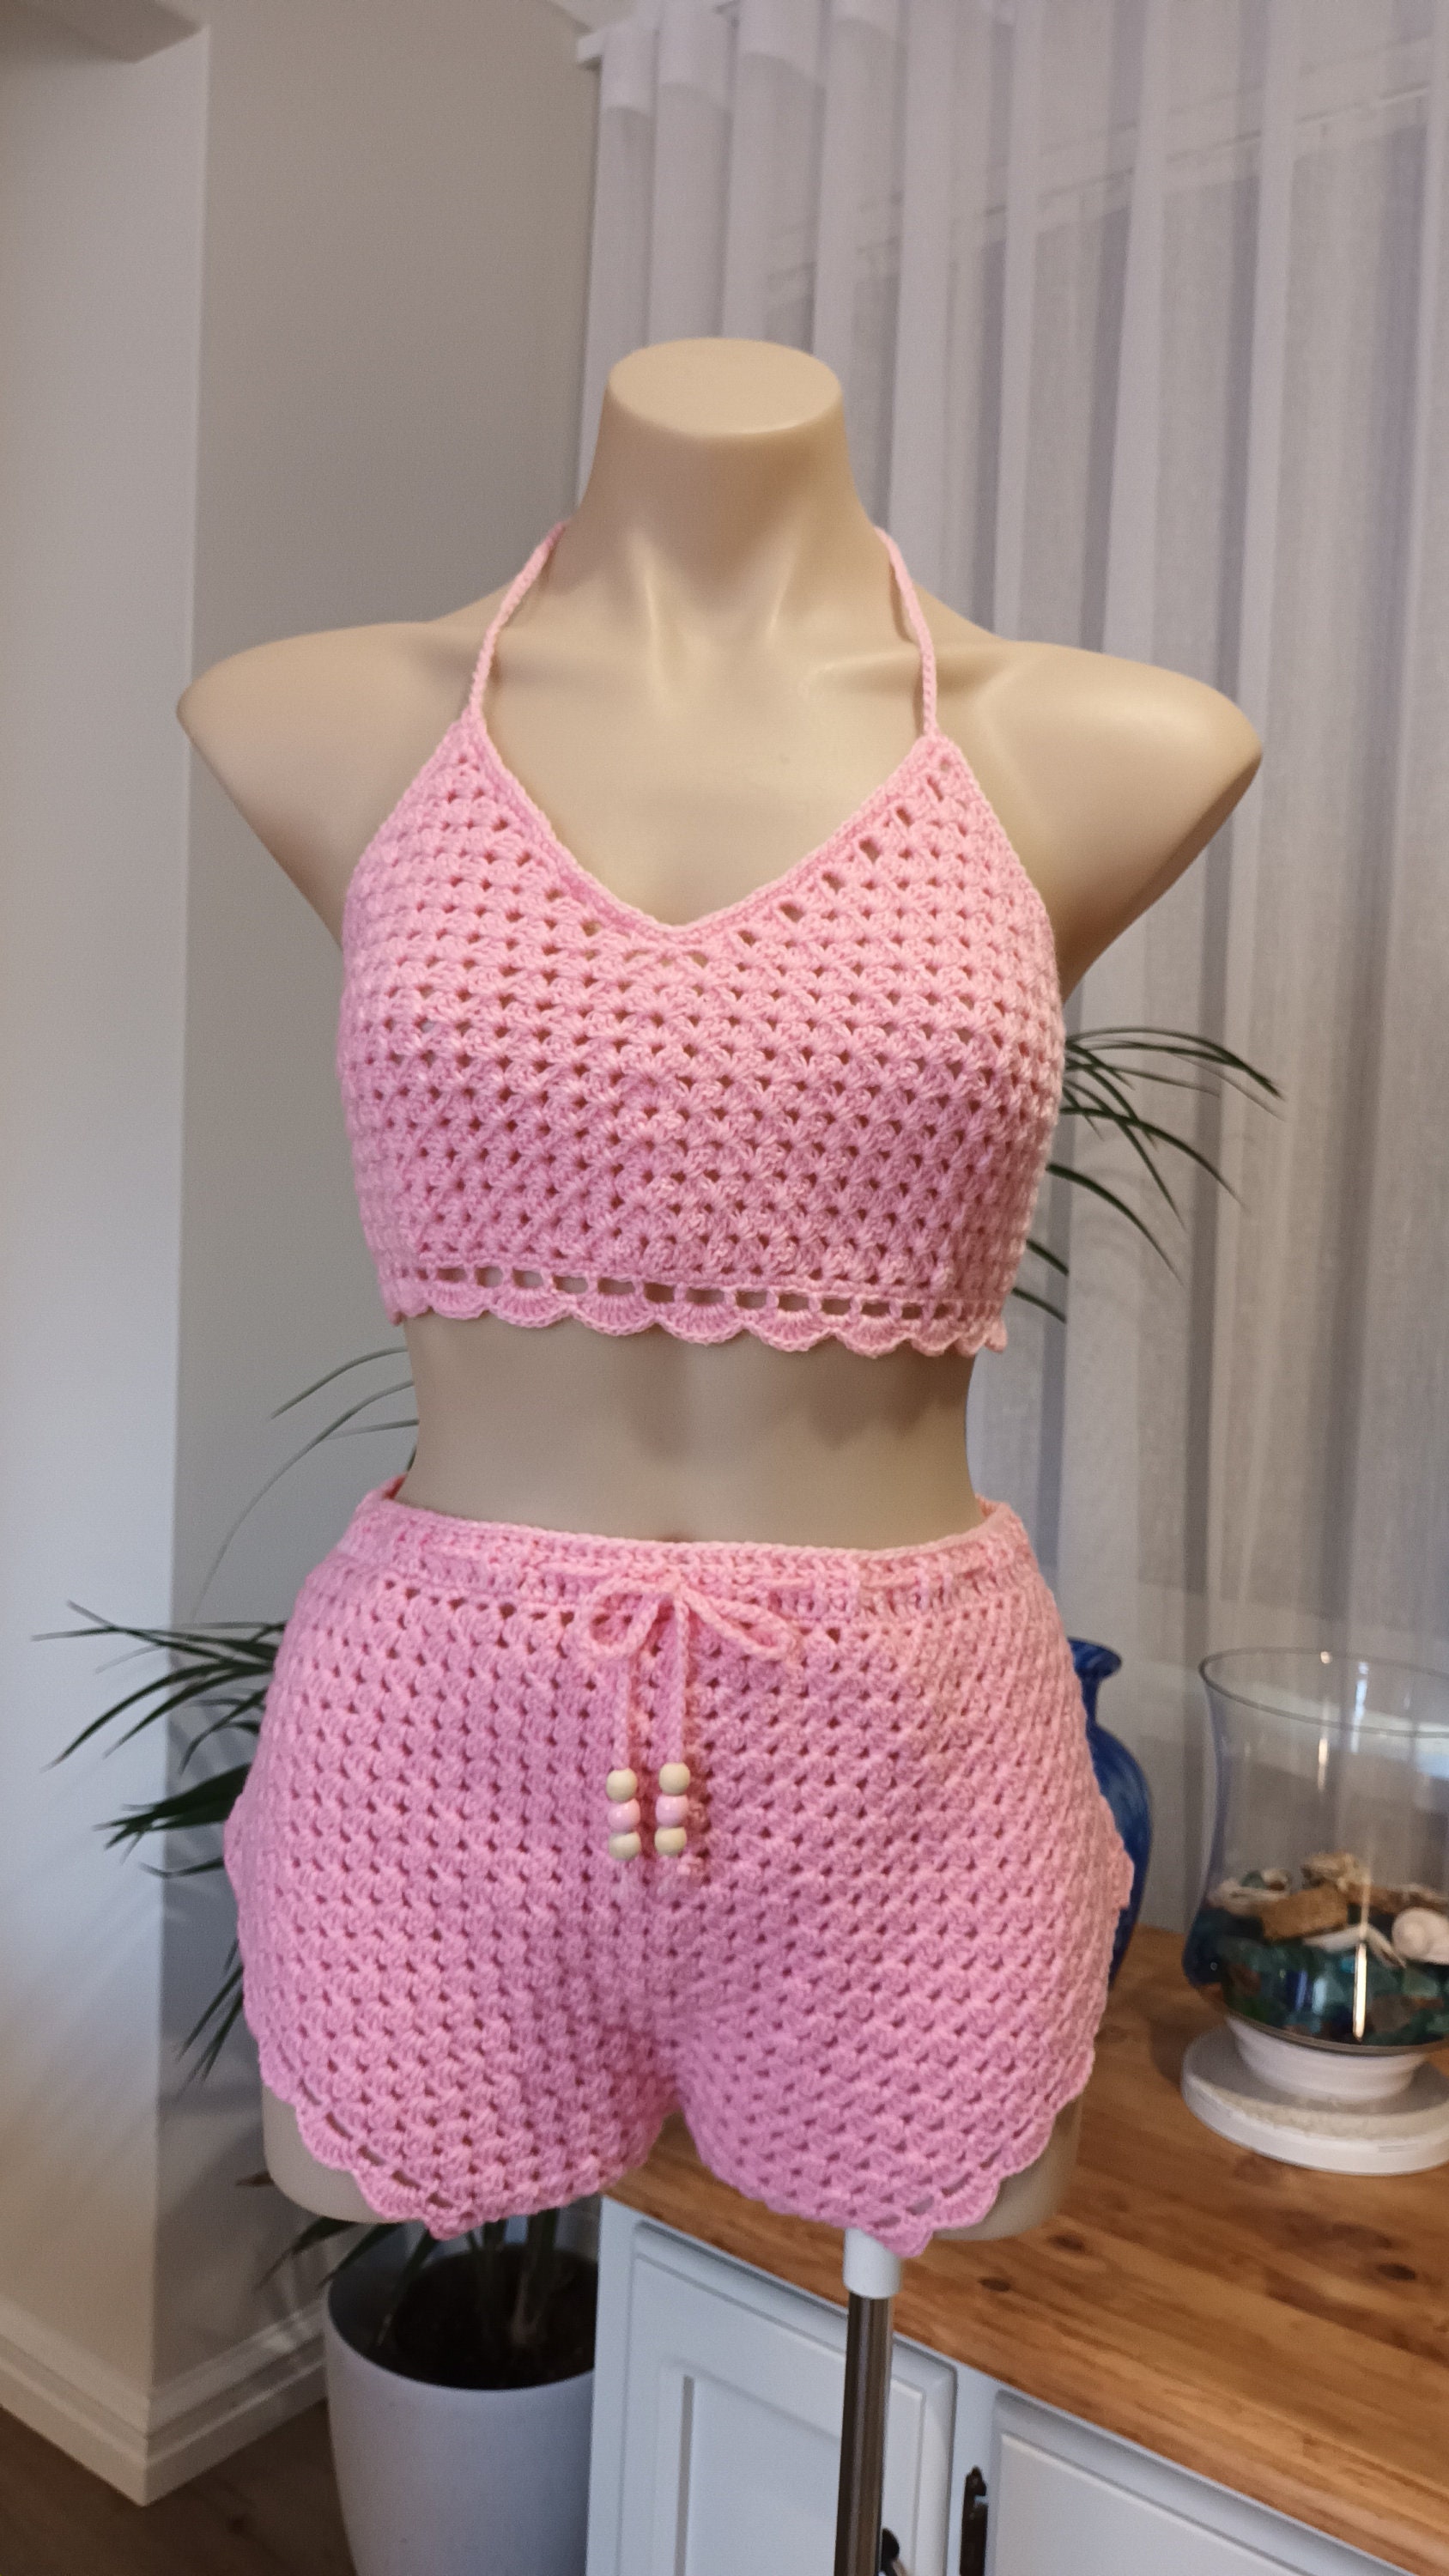 Fierce Jumsuit / Crochet Jumpsuit Pattern for Women / Crochet Cromper /  Cute and Sexy Crochet Shorts / Summer Onesie /laced Romper / Pdf -   Canada